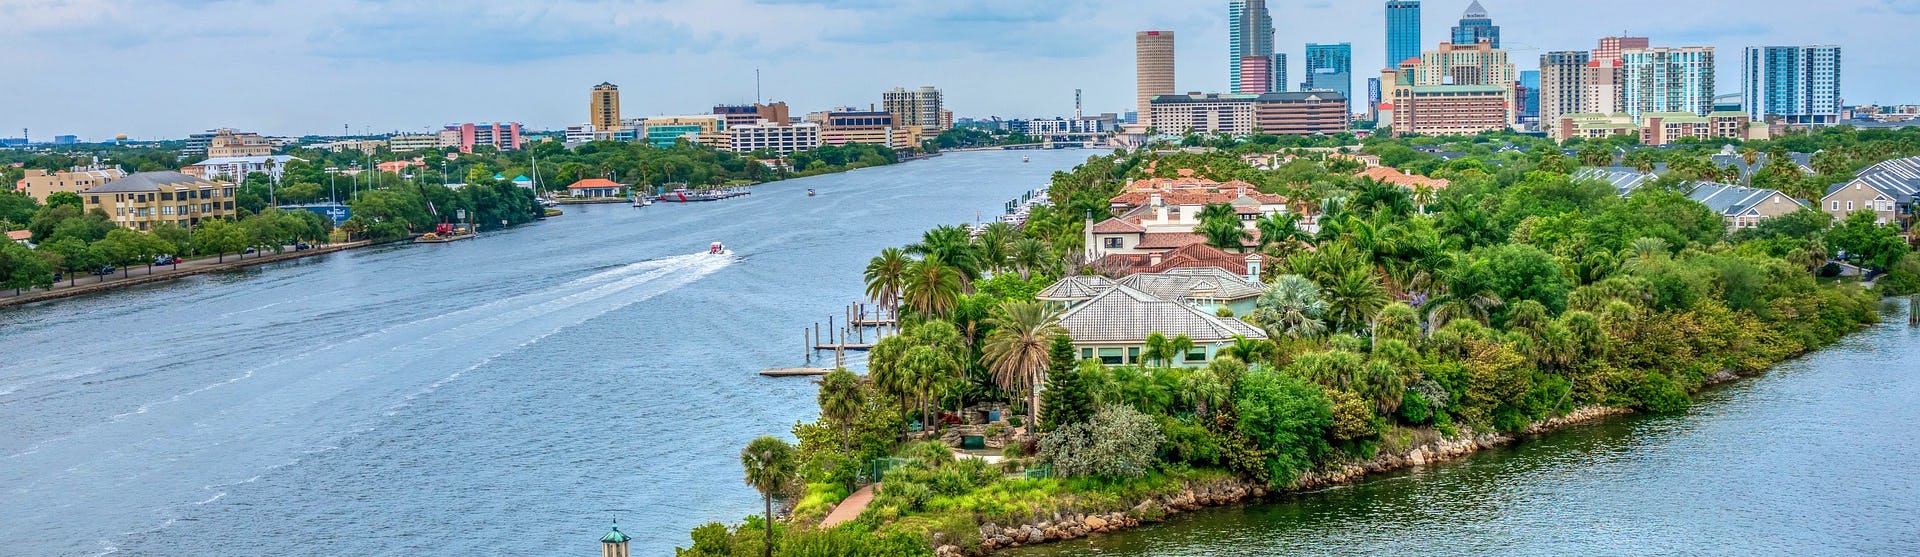 Bild på en halvö i Tampa med hus, palmer, vattnet och höghus i bakgrunden.